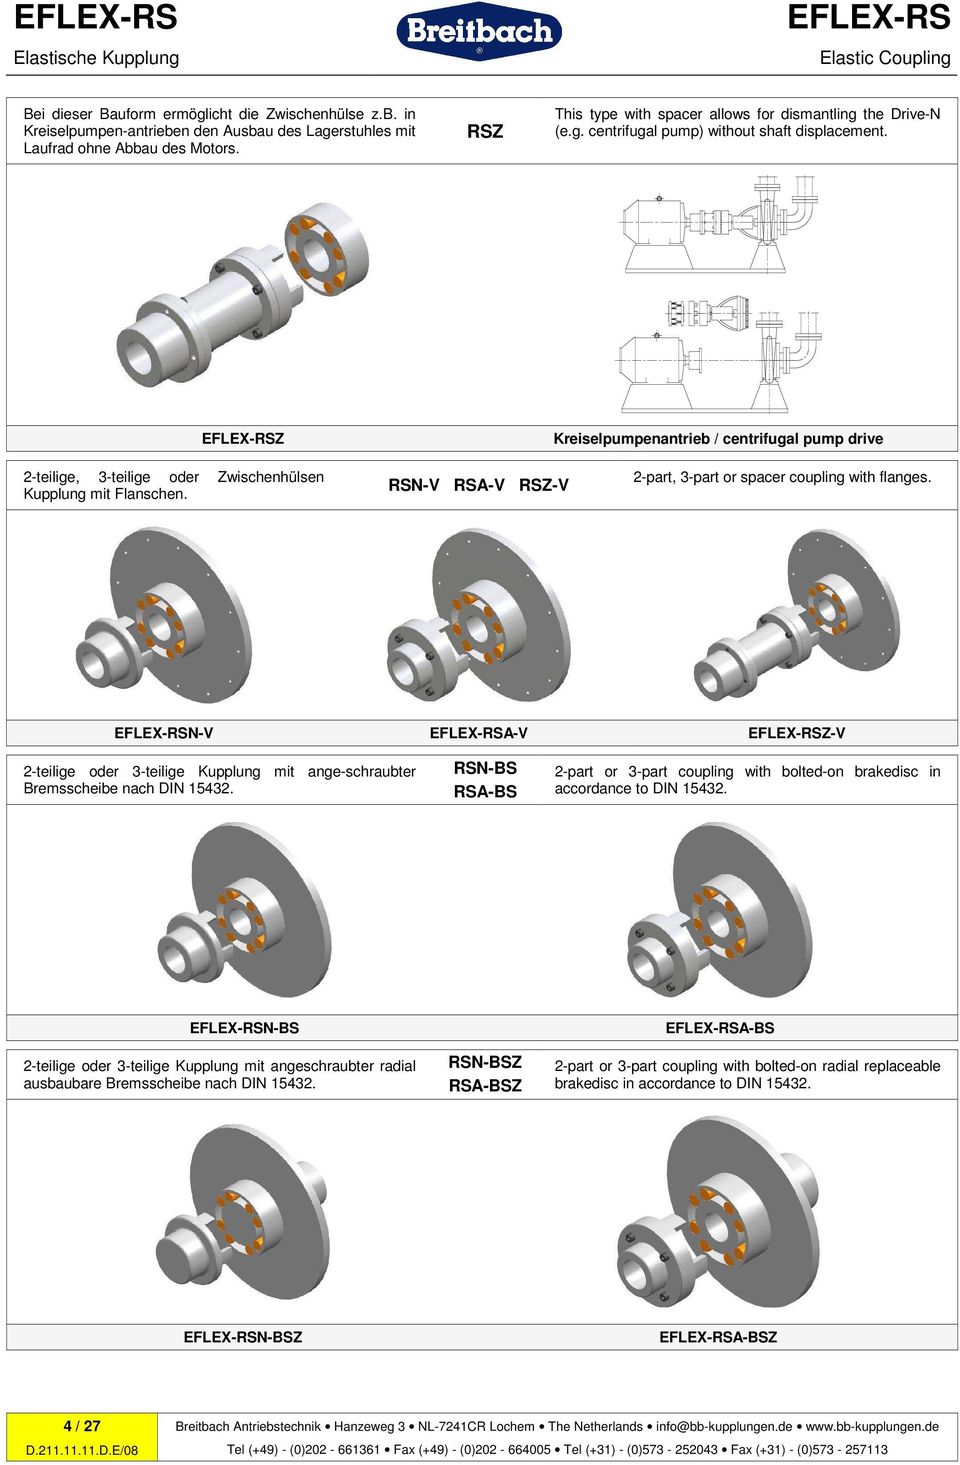 Z Kreiselpumpenantrieb / centrifugal pump drive 2-teilige, 3-teilige oder Zwischenhülsen Kupplung mit Flanschen. RSN-V RSA-V RSZ-V 2-part, 3-part or spacer coupling with flanges.